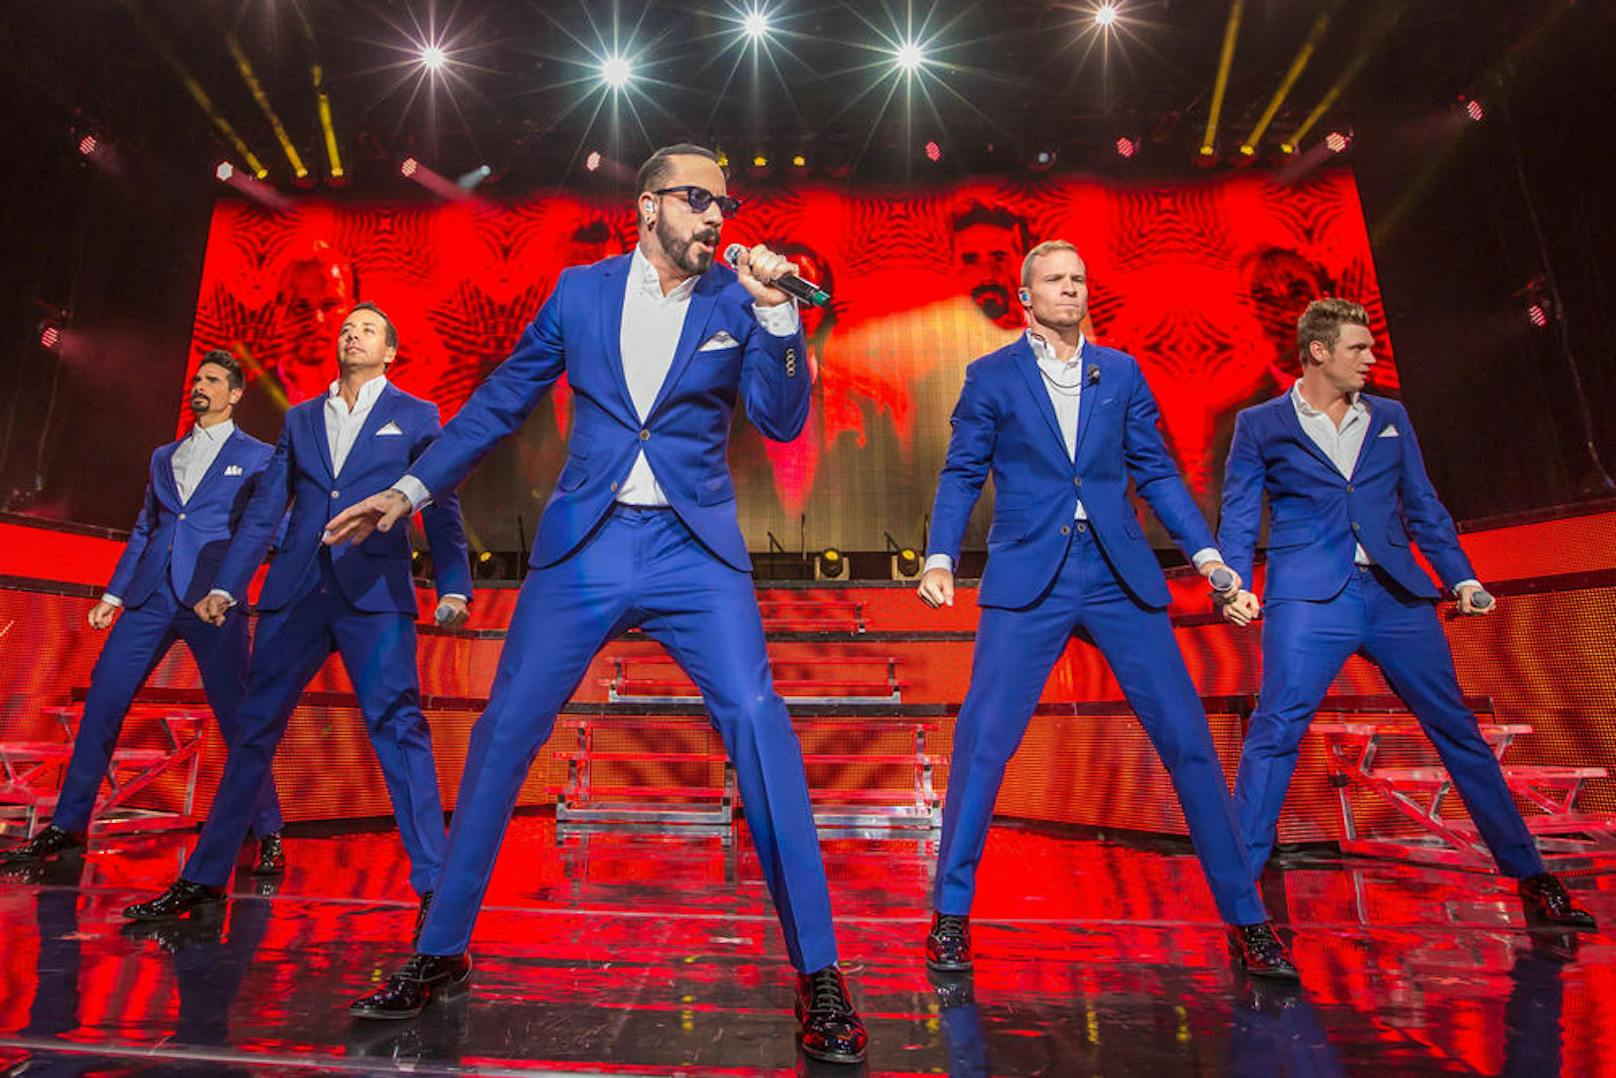 Die Backstreet Boys bei einem Konzert im Rahmen ihrer "In A World Like This"-Tour in Michigan, 2014